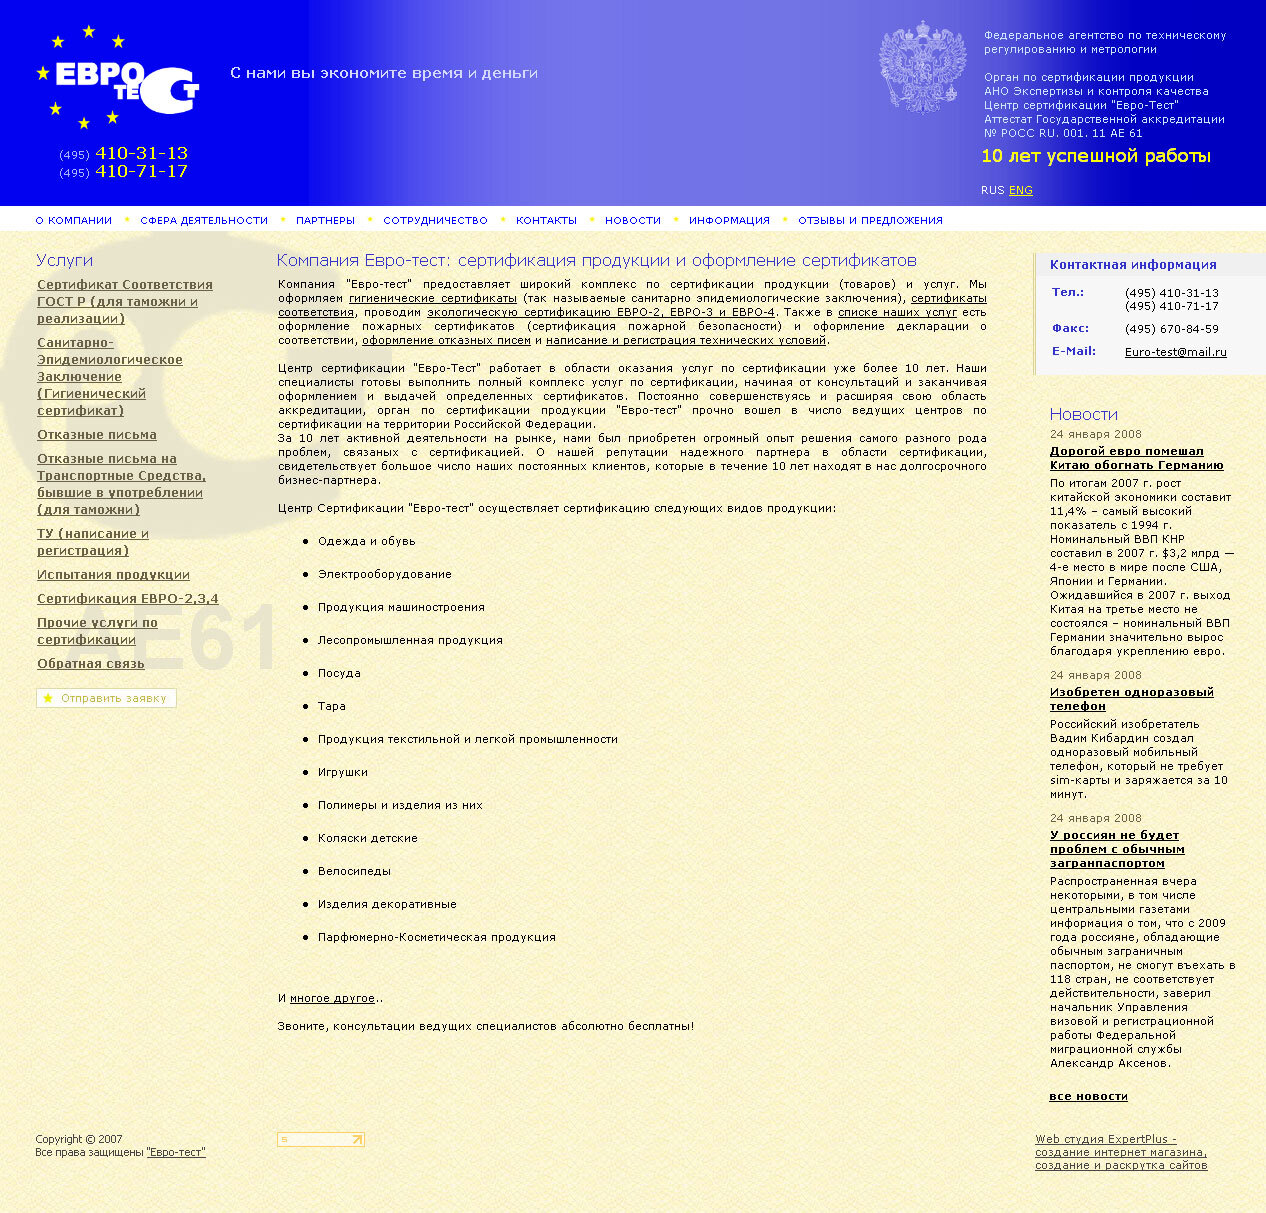 Сайт компании "Евро-Тест" - сертификация продукции и оформление сертификатов